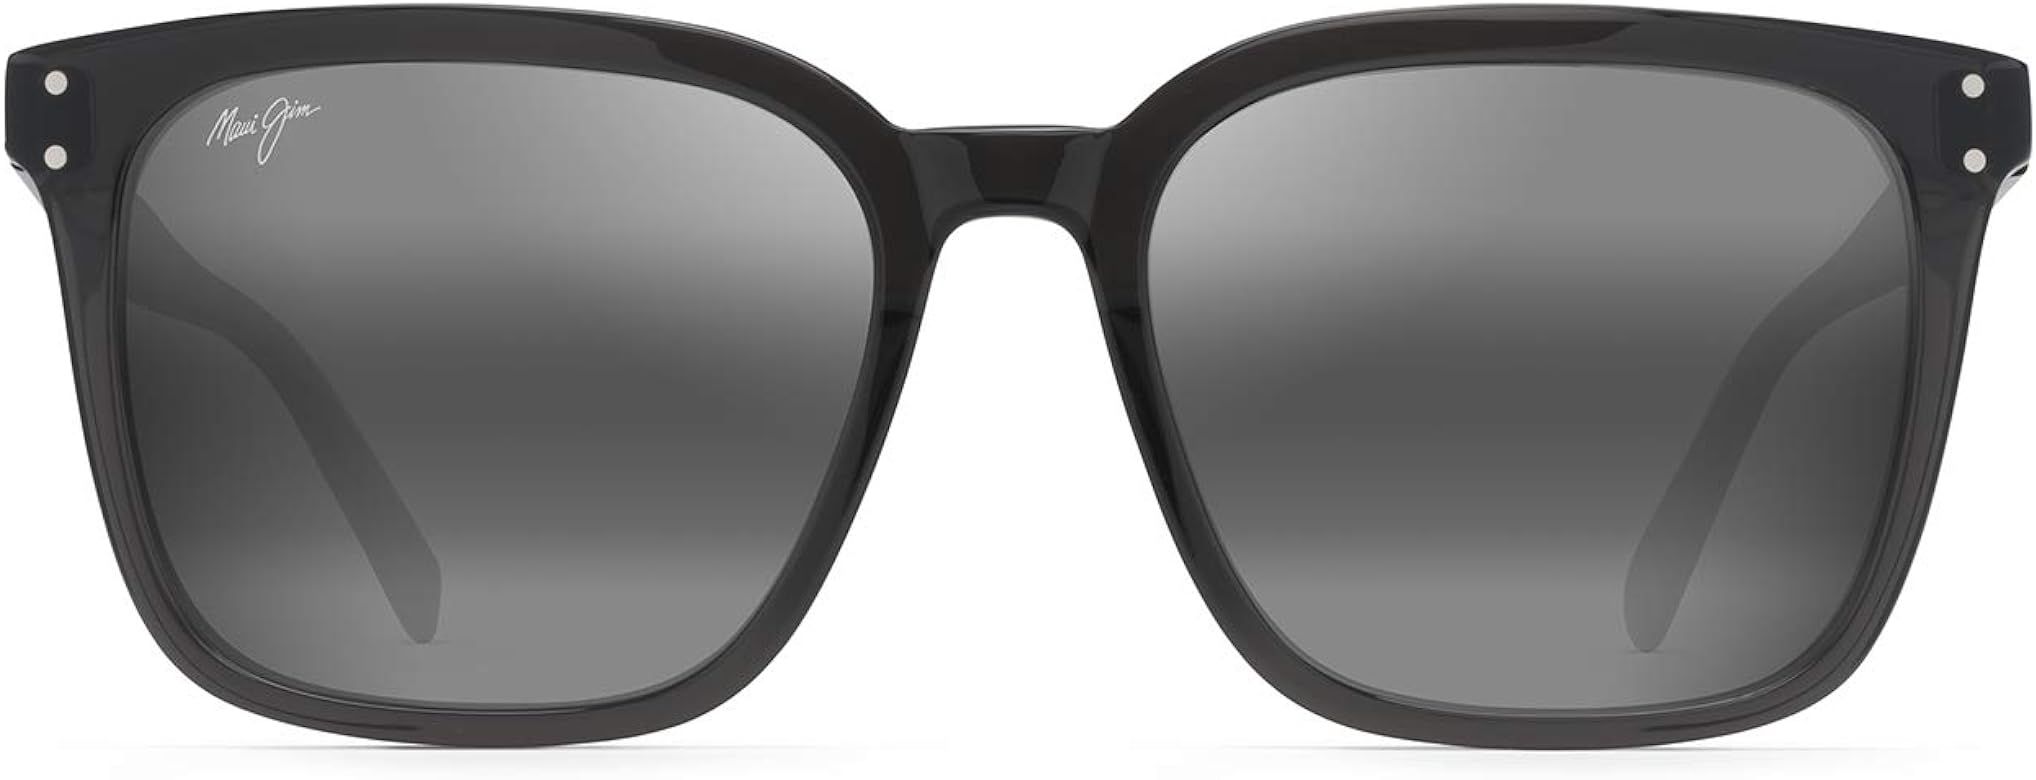 Maui Jim Men's and Women's Westside Polarized Fashion Sunglasses | Amazon (US)